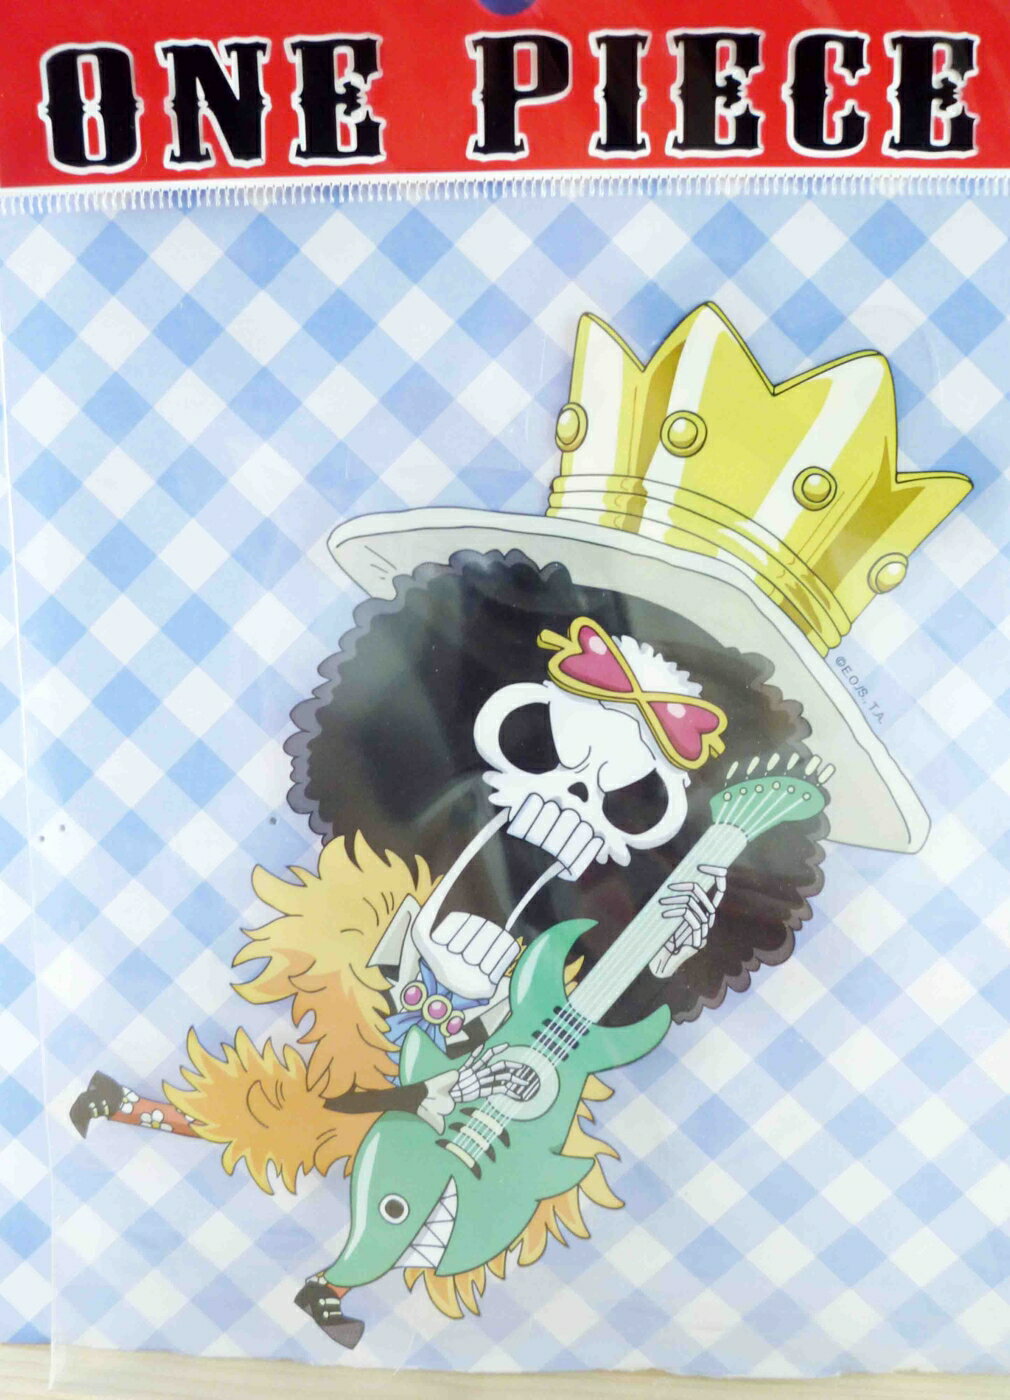 【震撼精品百貨】One Piece 海賊王 貼紙-布魯克 震撼日式精品百貨